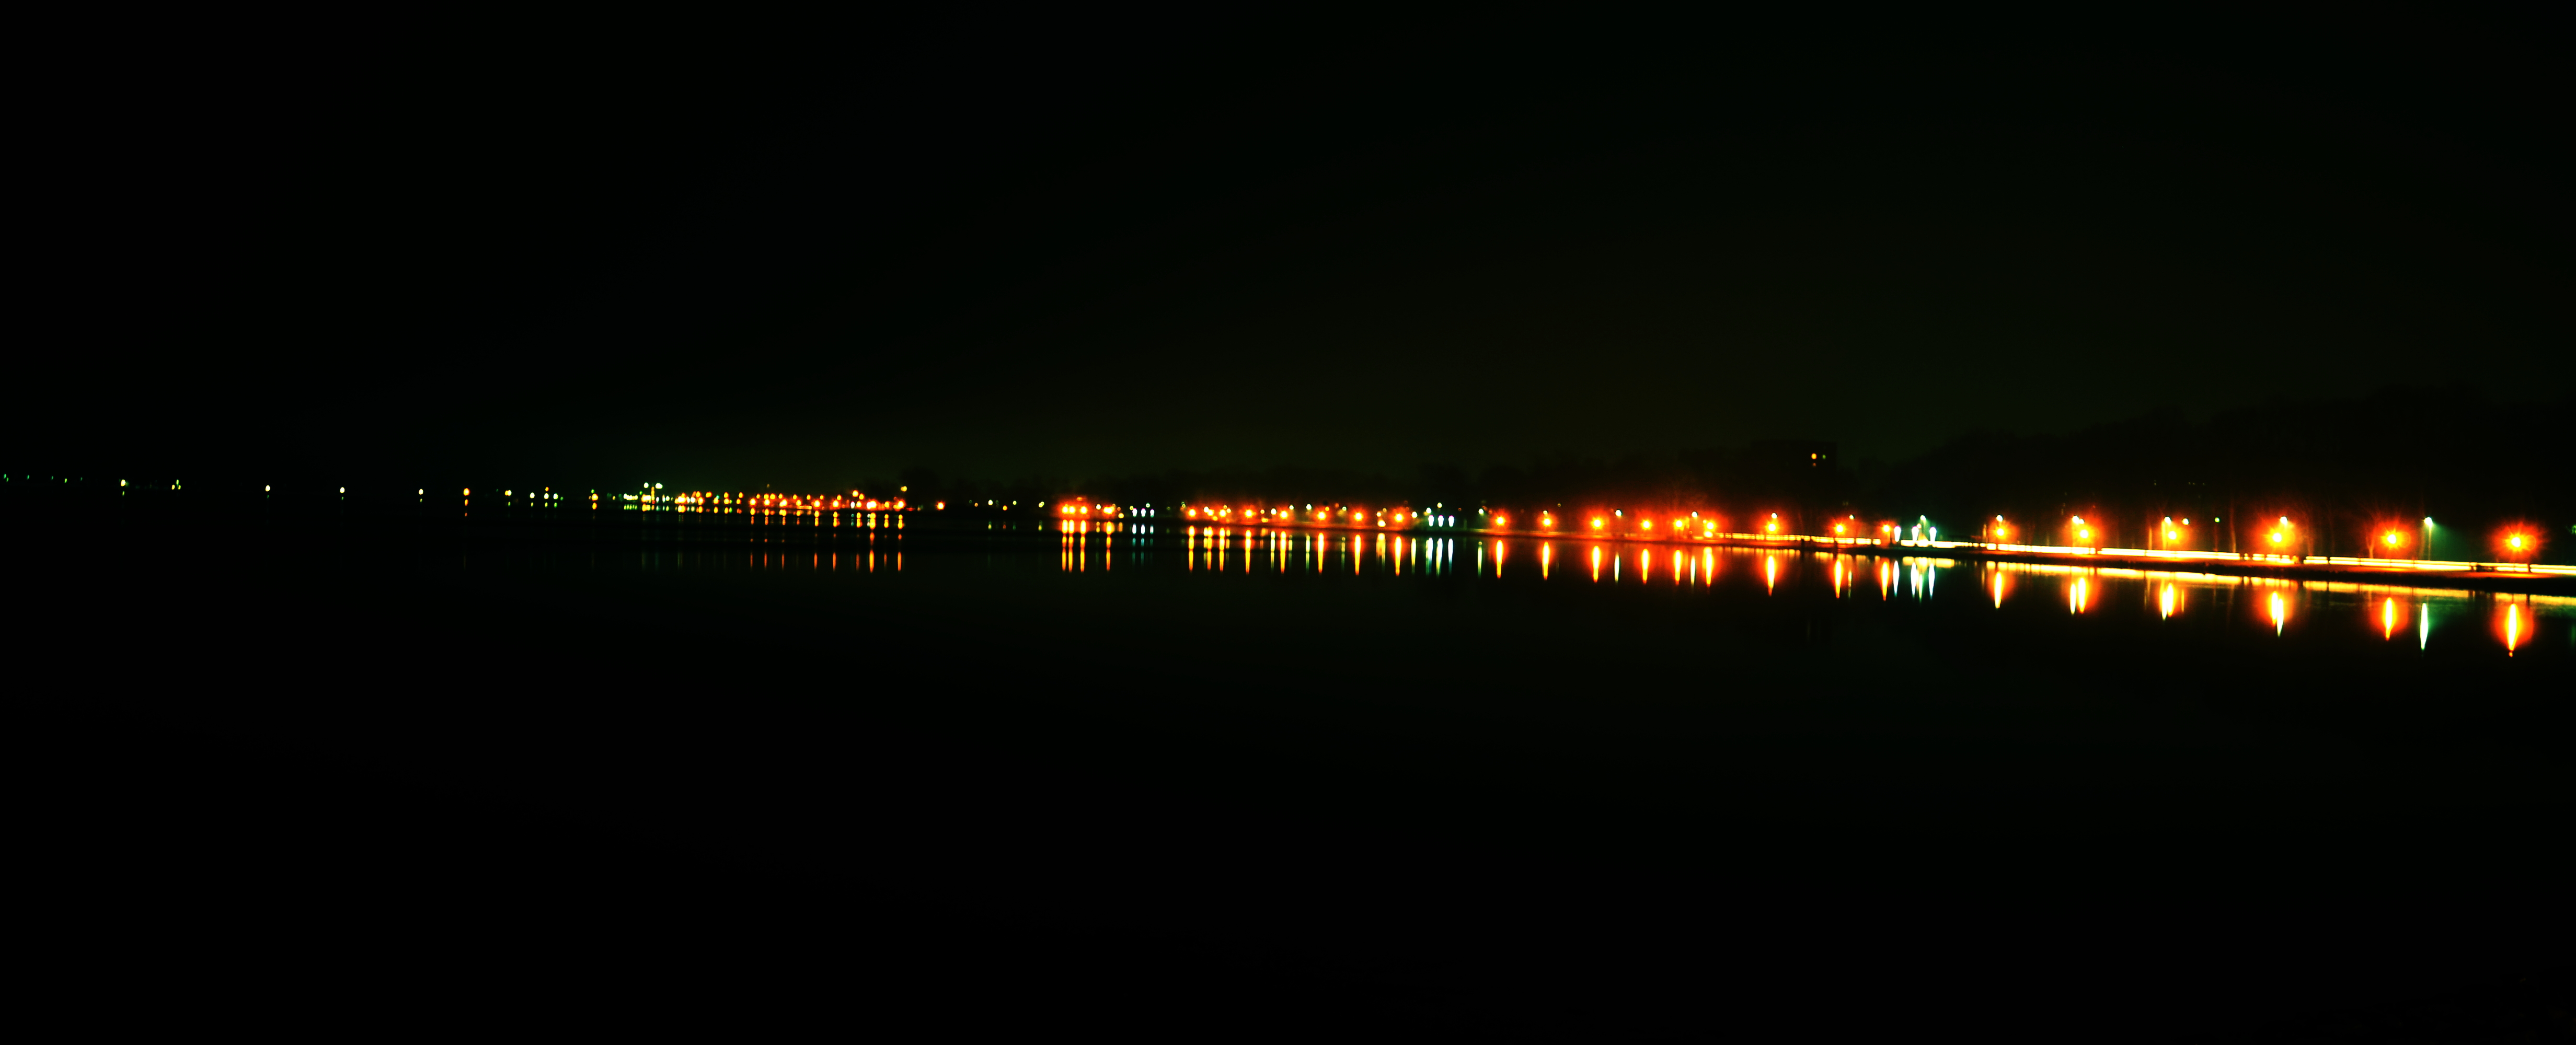 Nachts am Binnensee